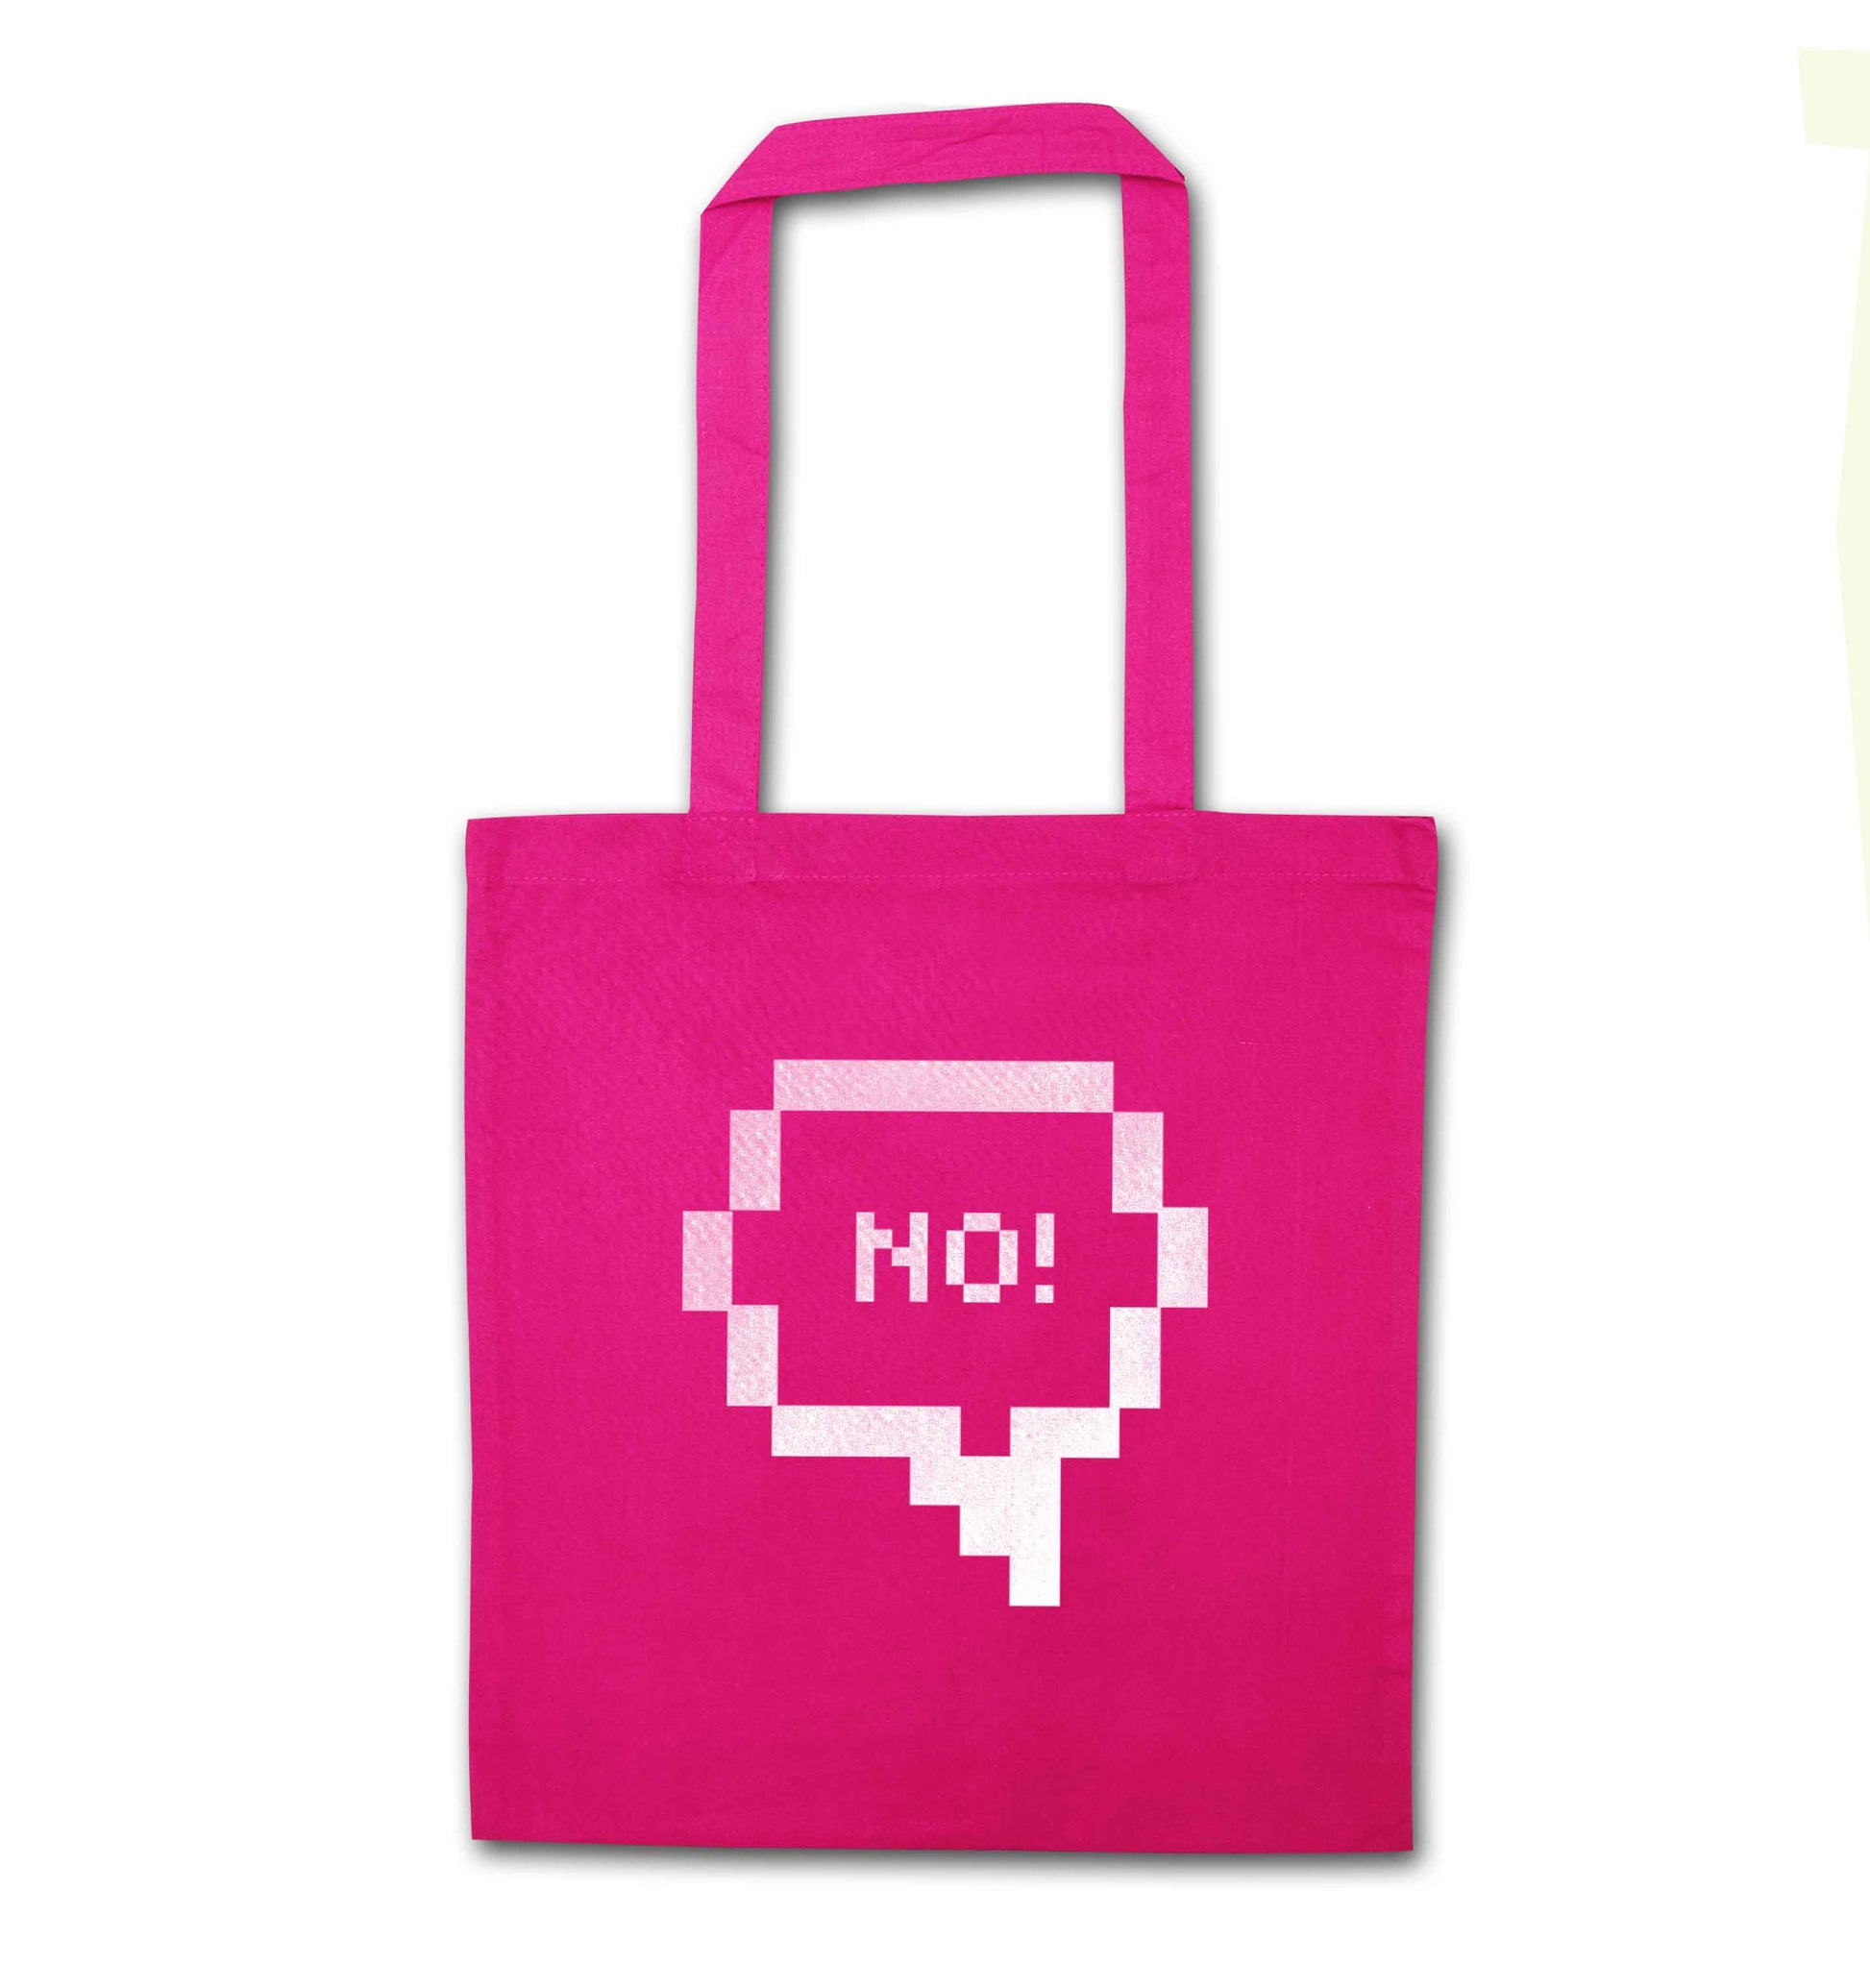 No pink tote bag